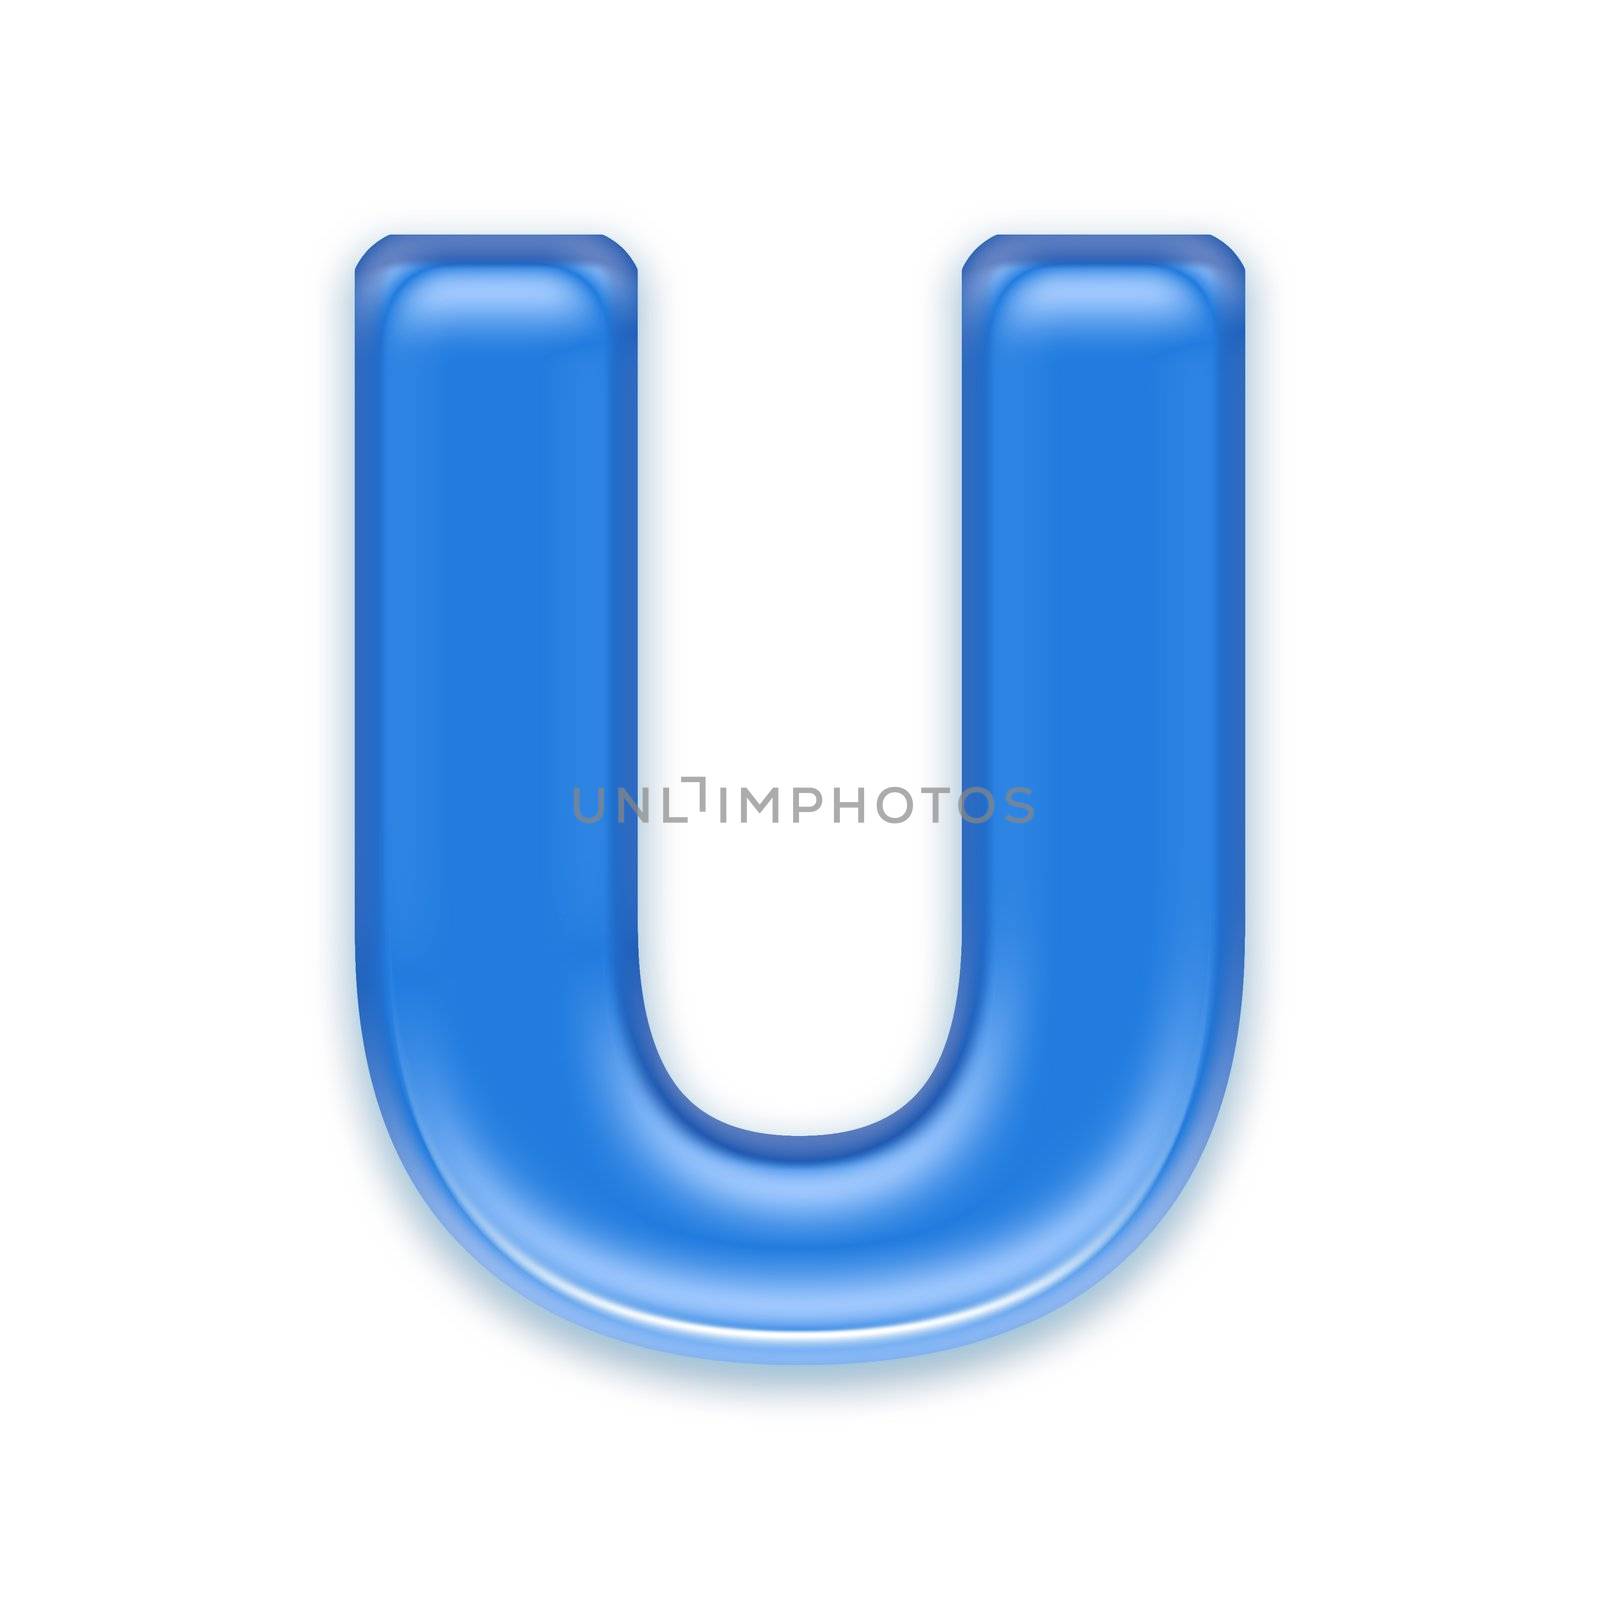 Aqua letter isolated on white background  - U